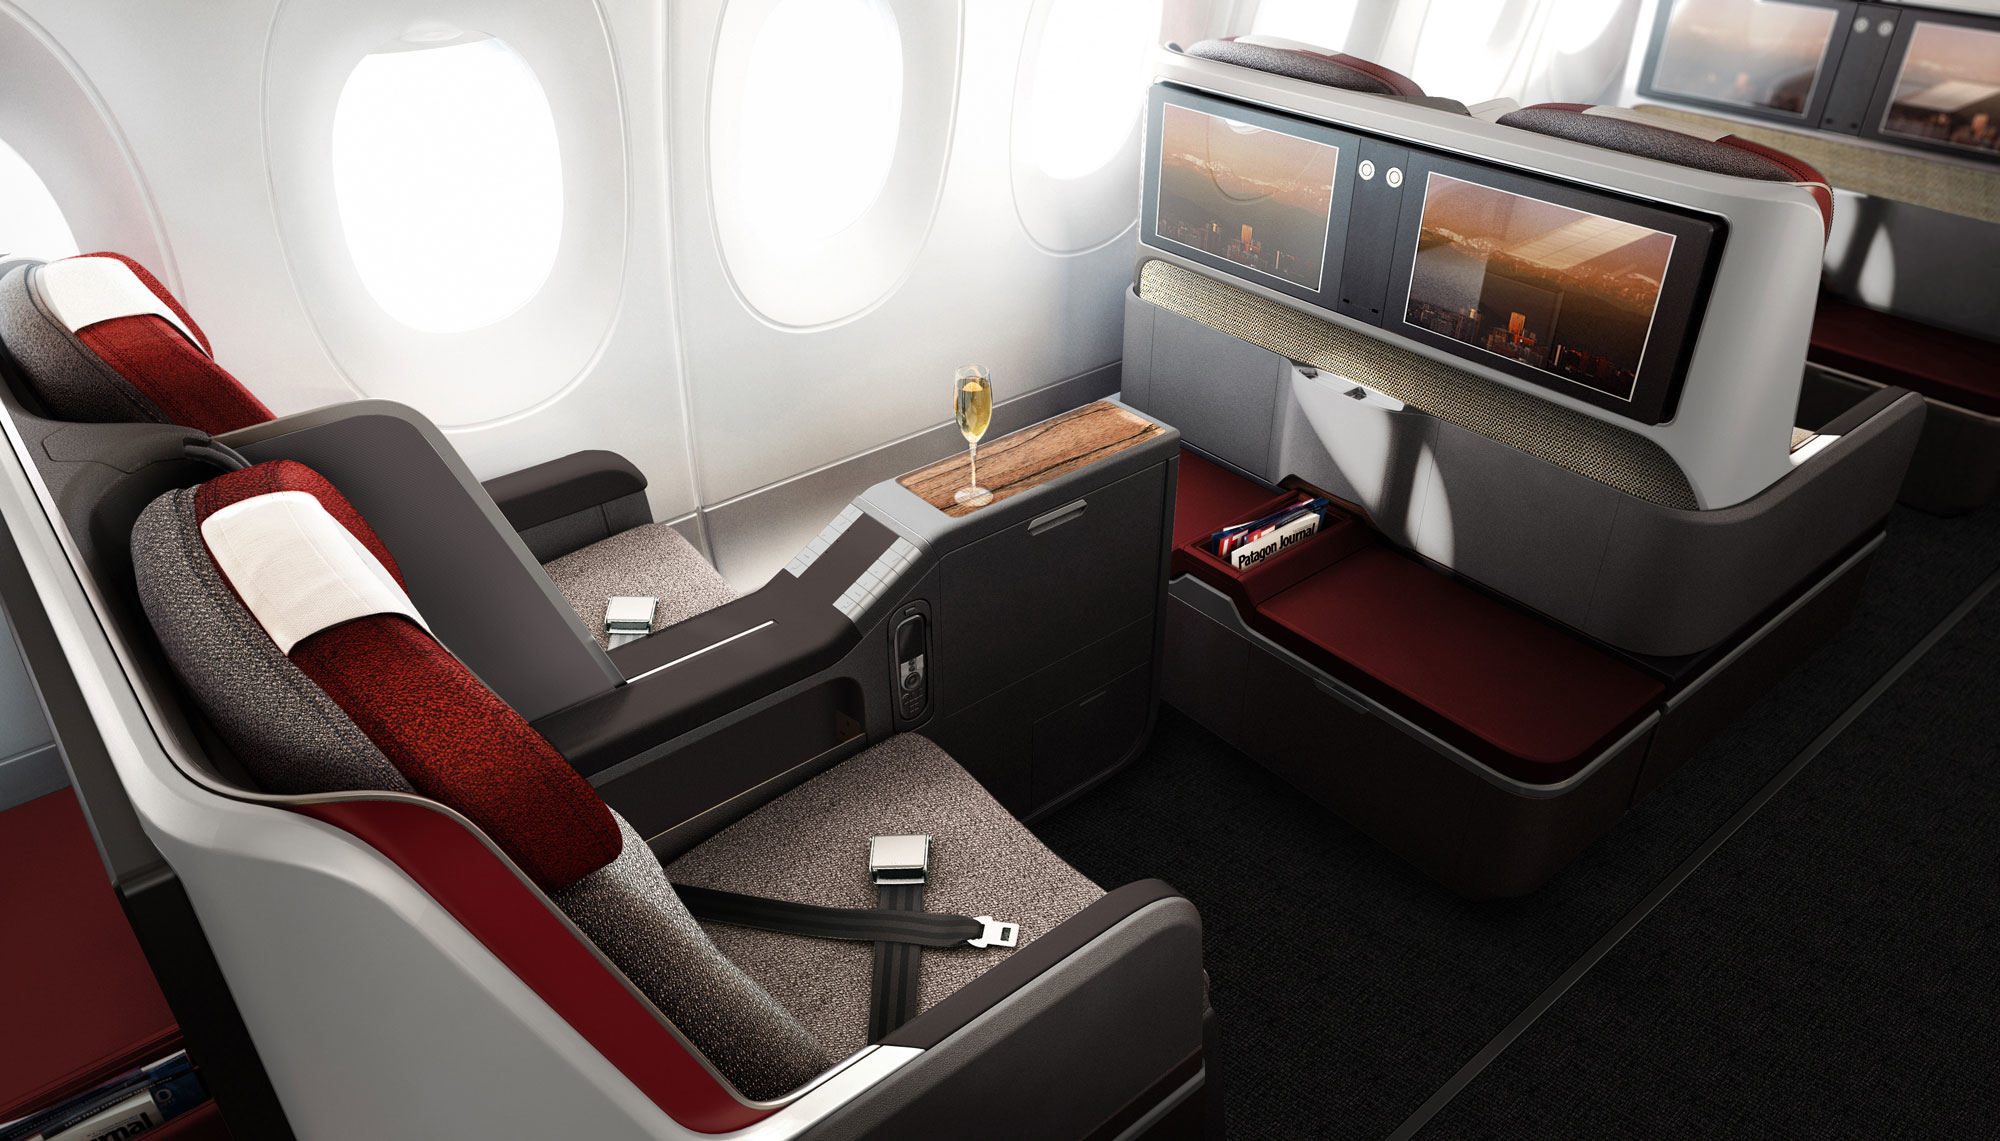 LATAM A350 business class seat cheap flights